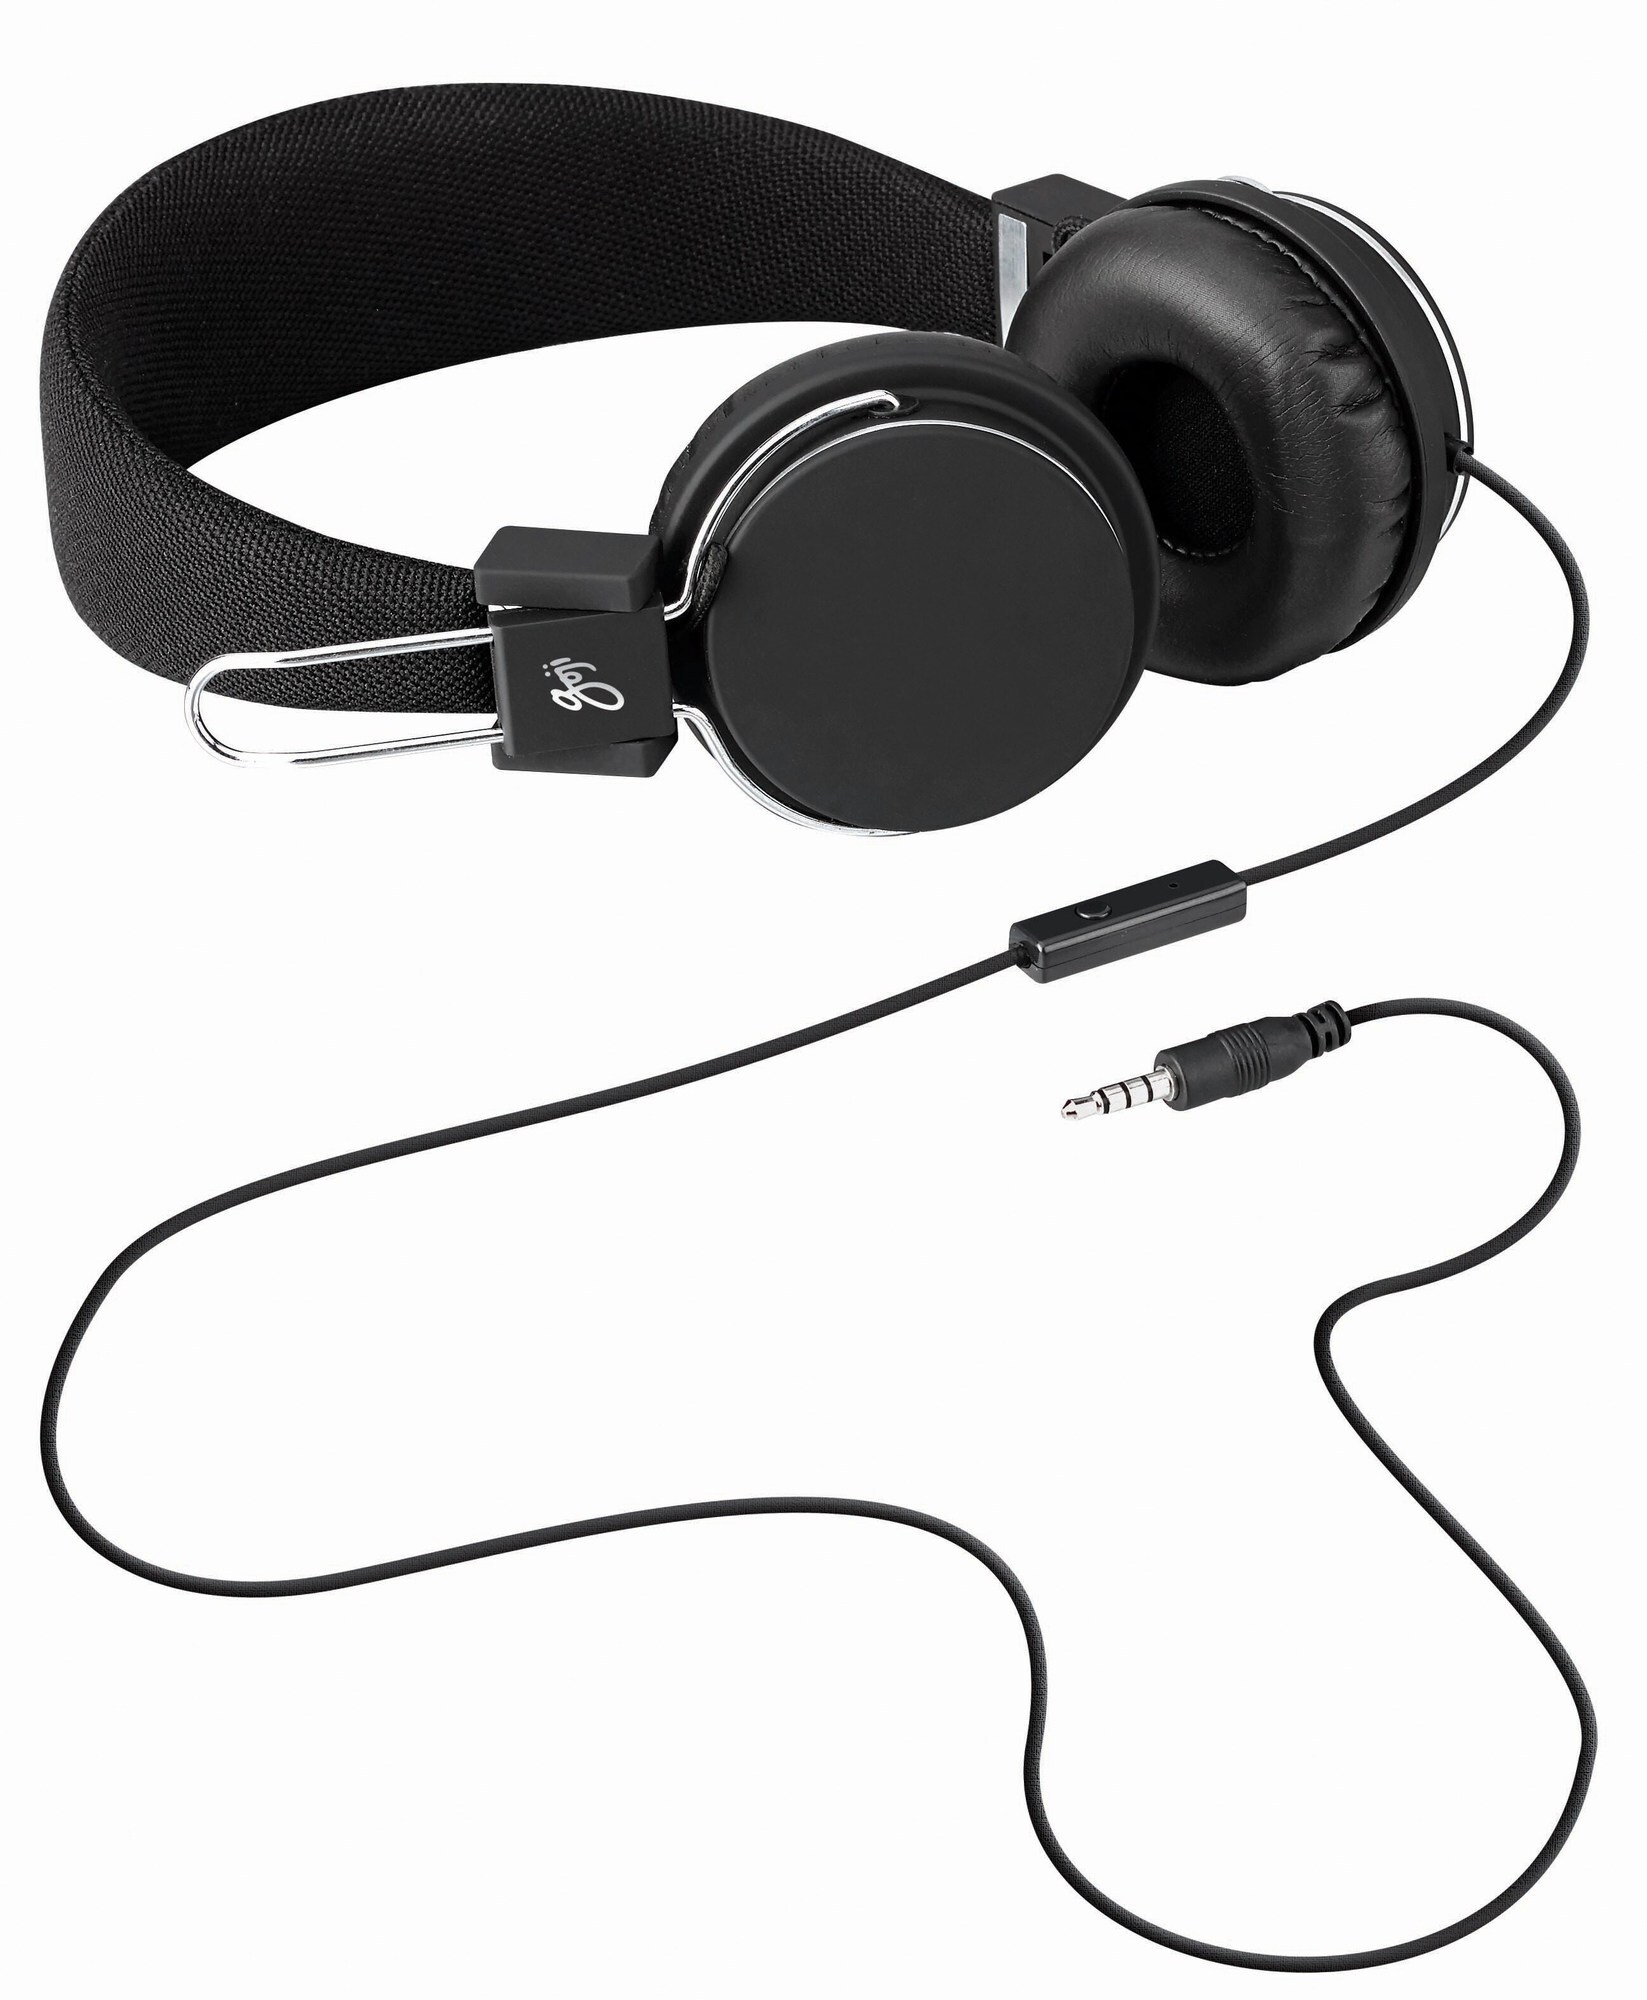 Goji kuulokkeet G4OEWH14 (musta) - Gigantti verkkokauppa